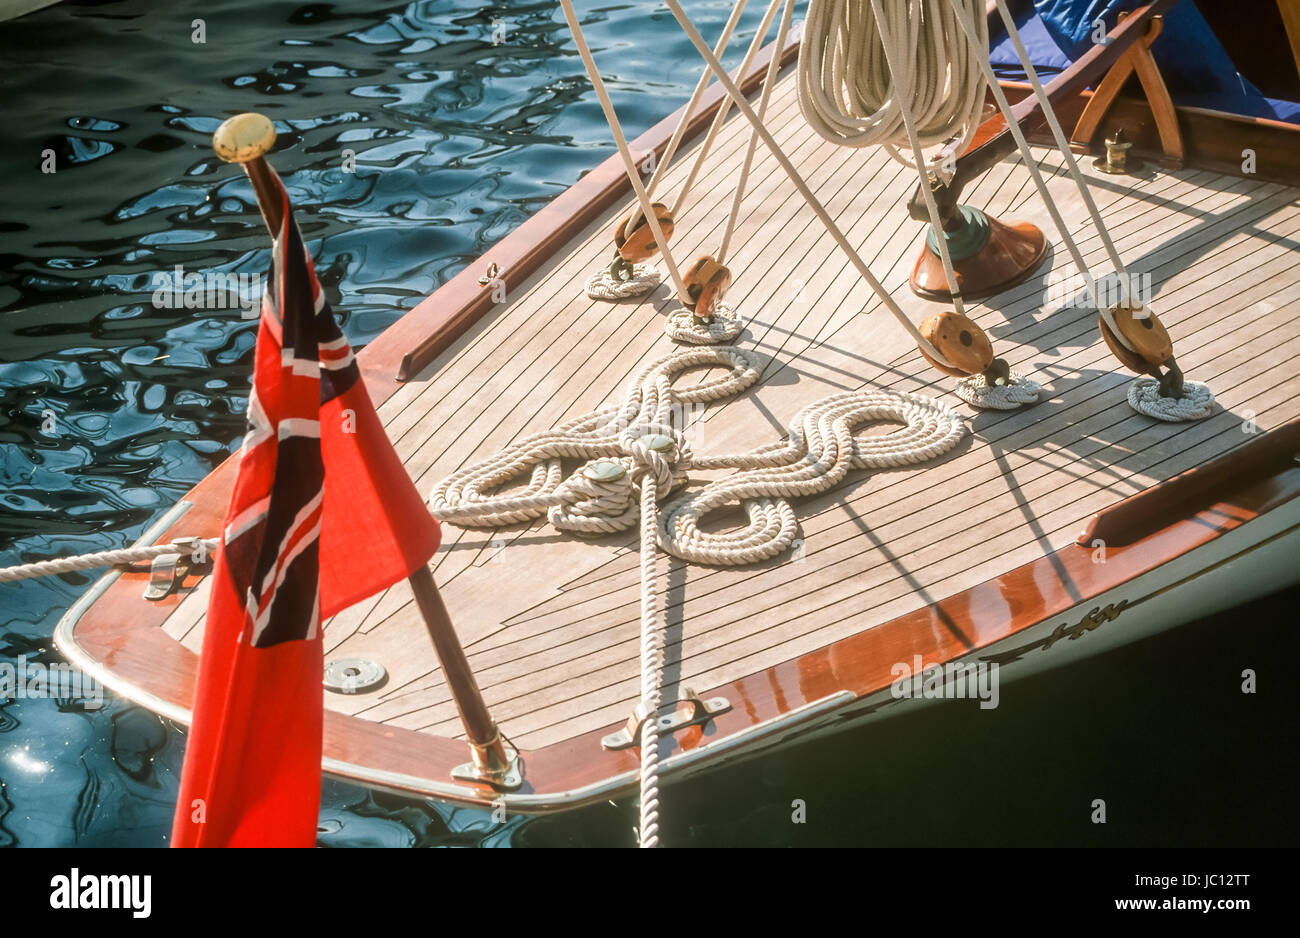 Segelyacht mit englischer Flagge a Saint Tropez Foto Stock